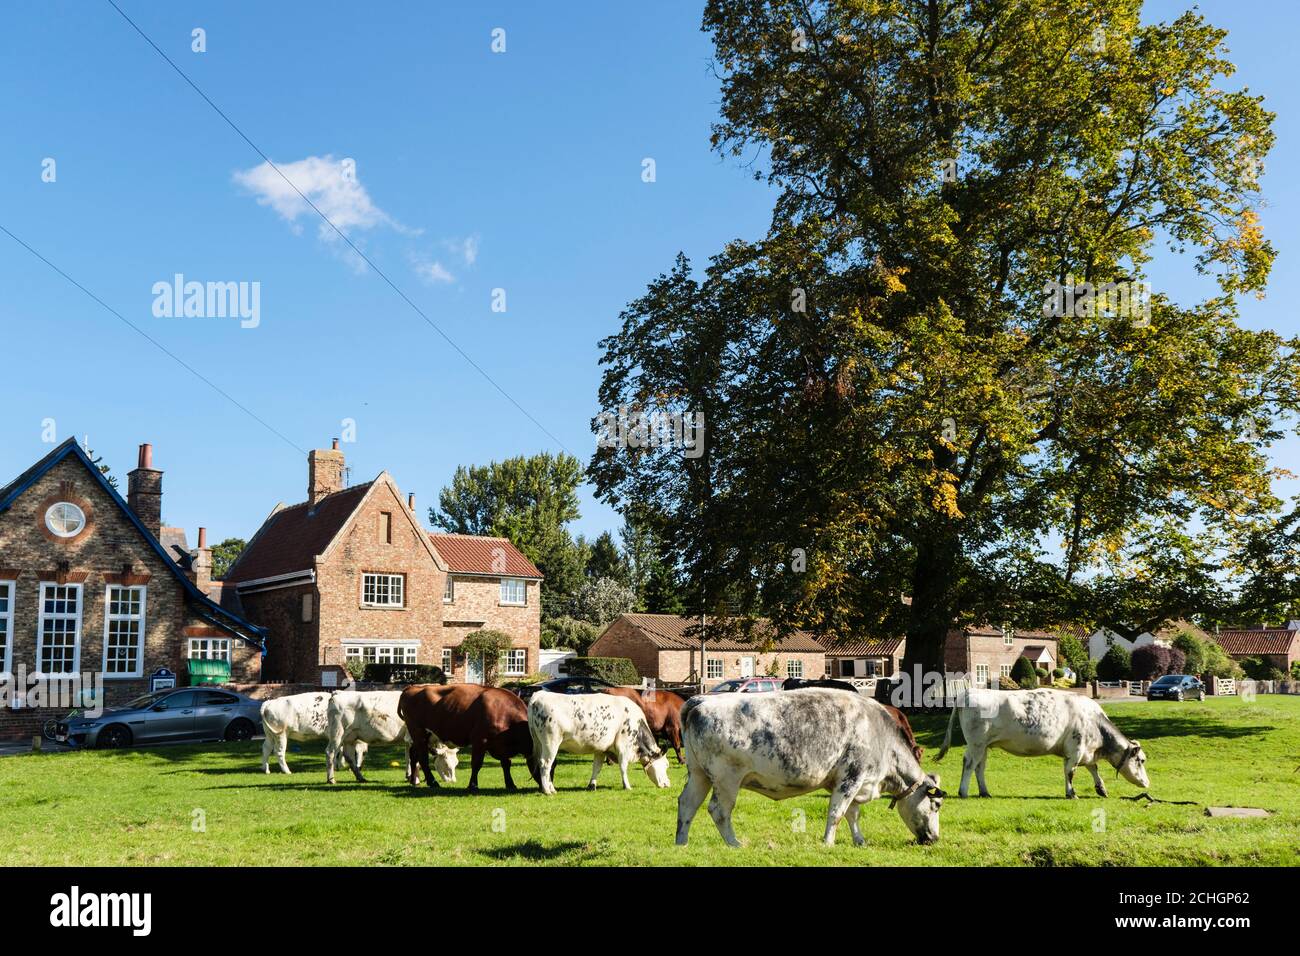 Free range mucche di bestiame che pascolano su terreni comuni su un paese verde fuori da una scuola. Nun Monkton, York, North Yorkshire, Inghilterra, Regno Unito, Gran Bretagna Foto Stock